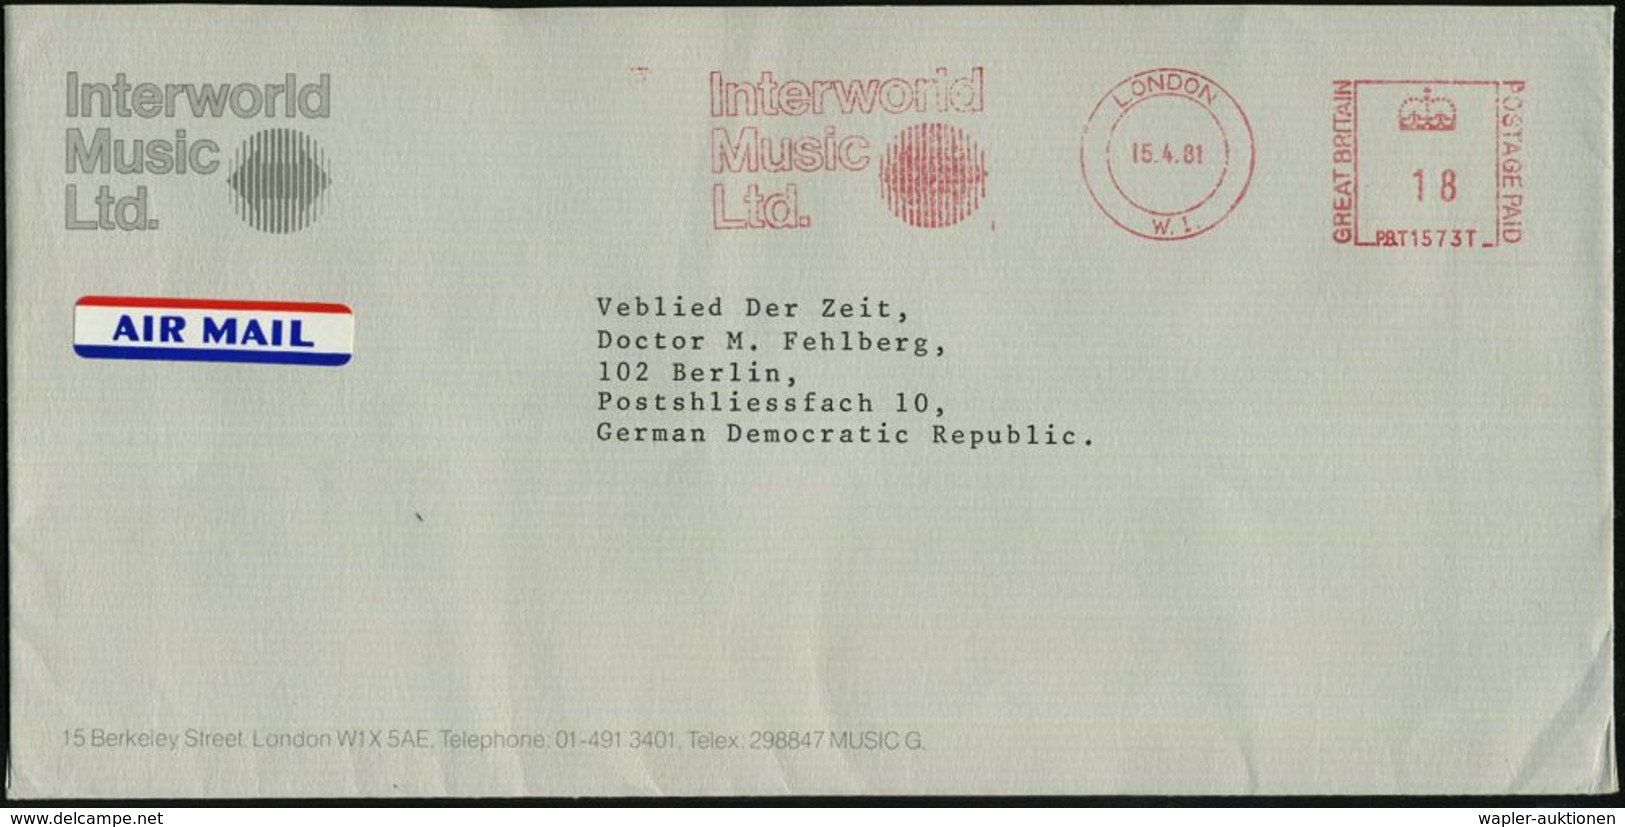 GROSSBRITANNIEN 1981 (15.4.) AFS.: LONDON/W.I./PB.T1573T/Interworld/Music/Ltd. (Logo) Motivgl. Ausl.-Flp.-Bf. - Weltauss - Musique